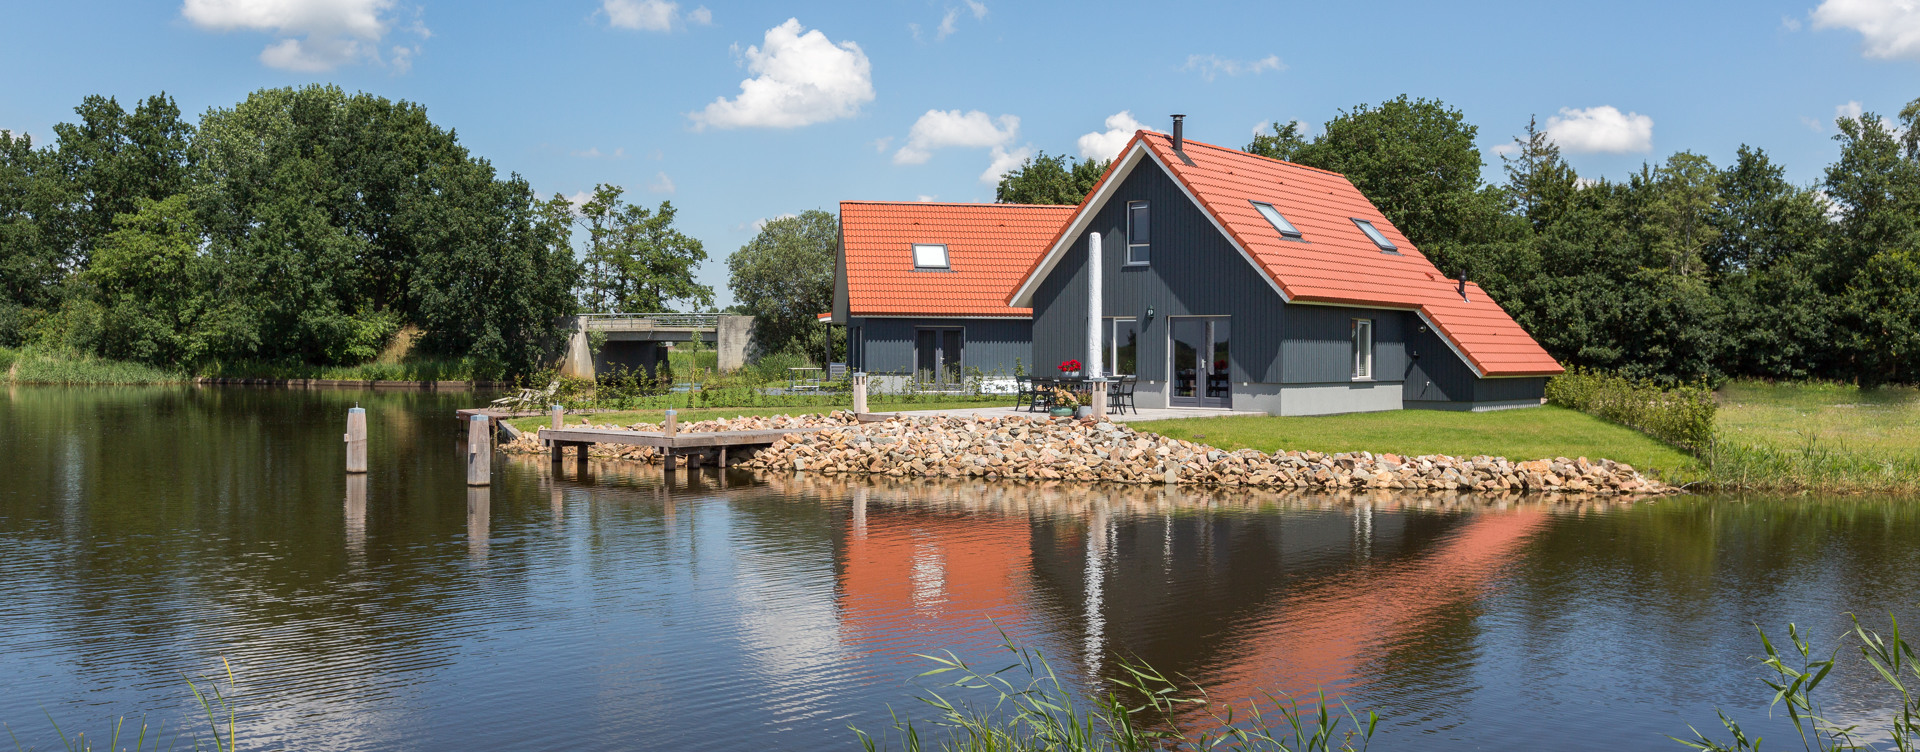 Erleben Sie einen tollen Urlaub auf dem Wasser im natürlichen Friesland